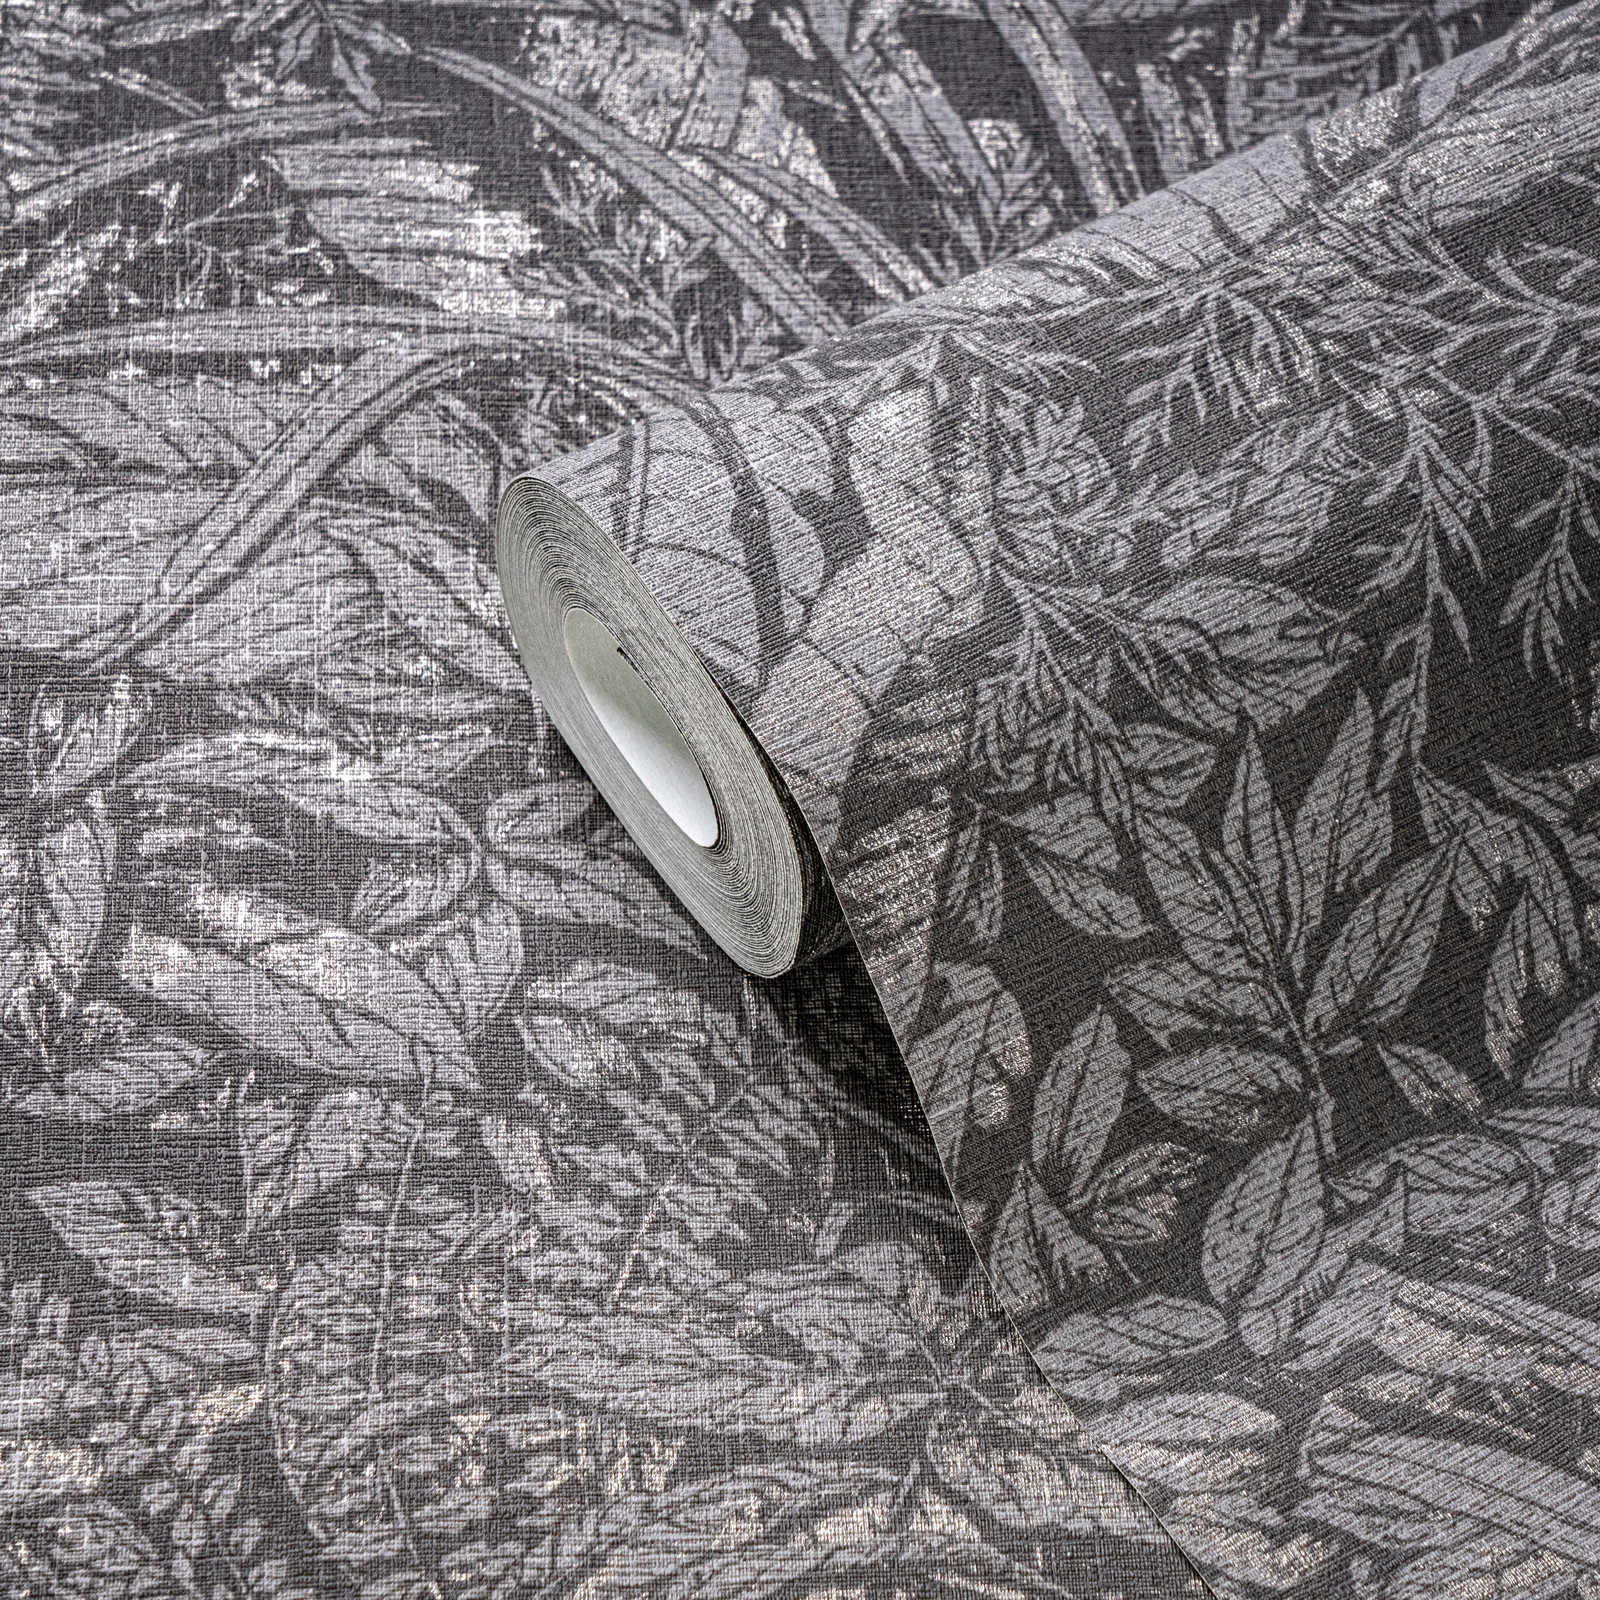             Carta da parati non tessuta con motivo floreale a foglie - grigio, nero, argento
        